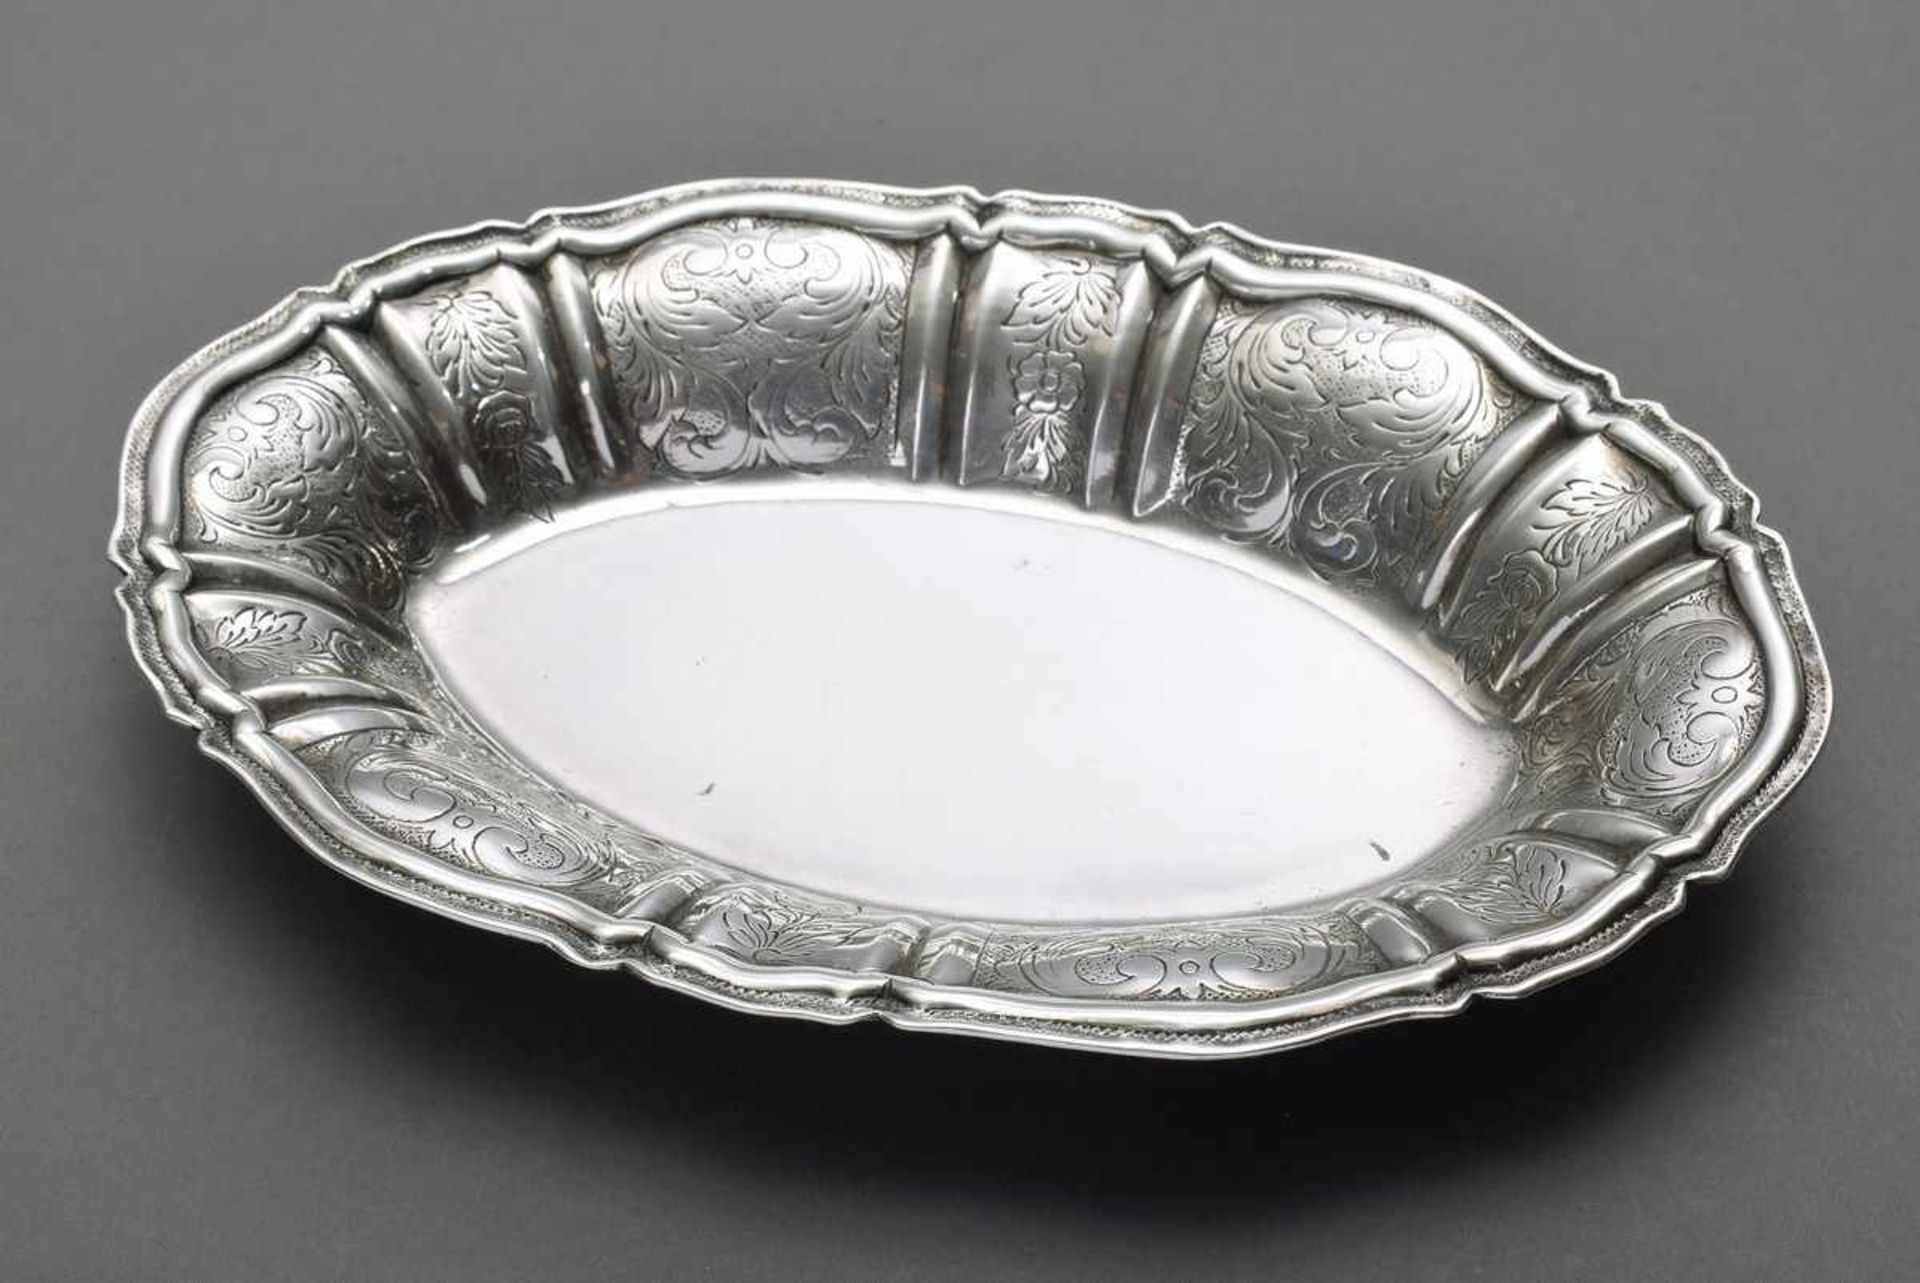 Ovale Schale mit floral graviertem Rand, Silber 830, 177g, 21x14cm, leichte KratzspurenOval bowl